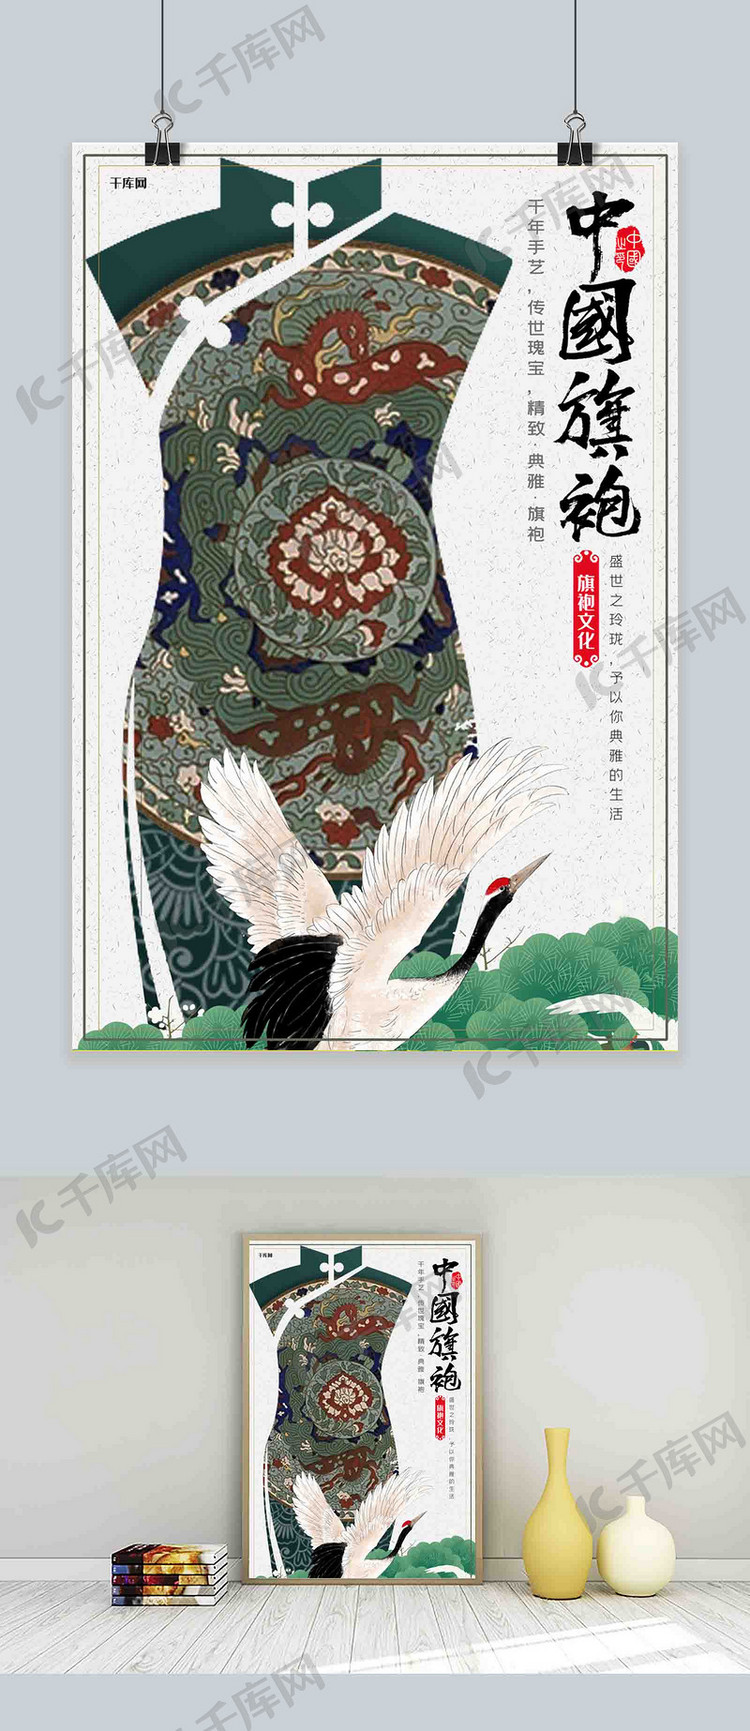 中国旗袍传统文化创意合成传统纹样宣传海报